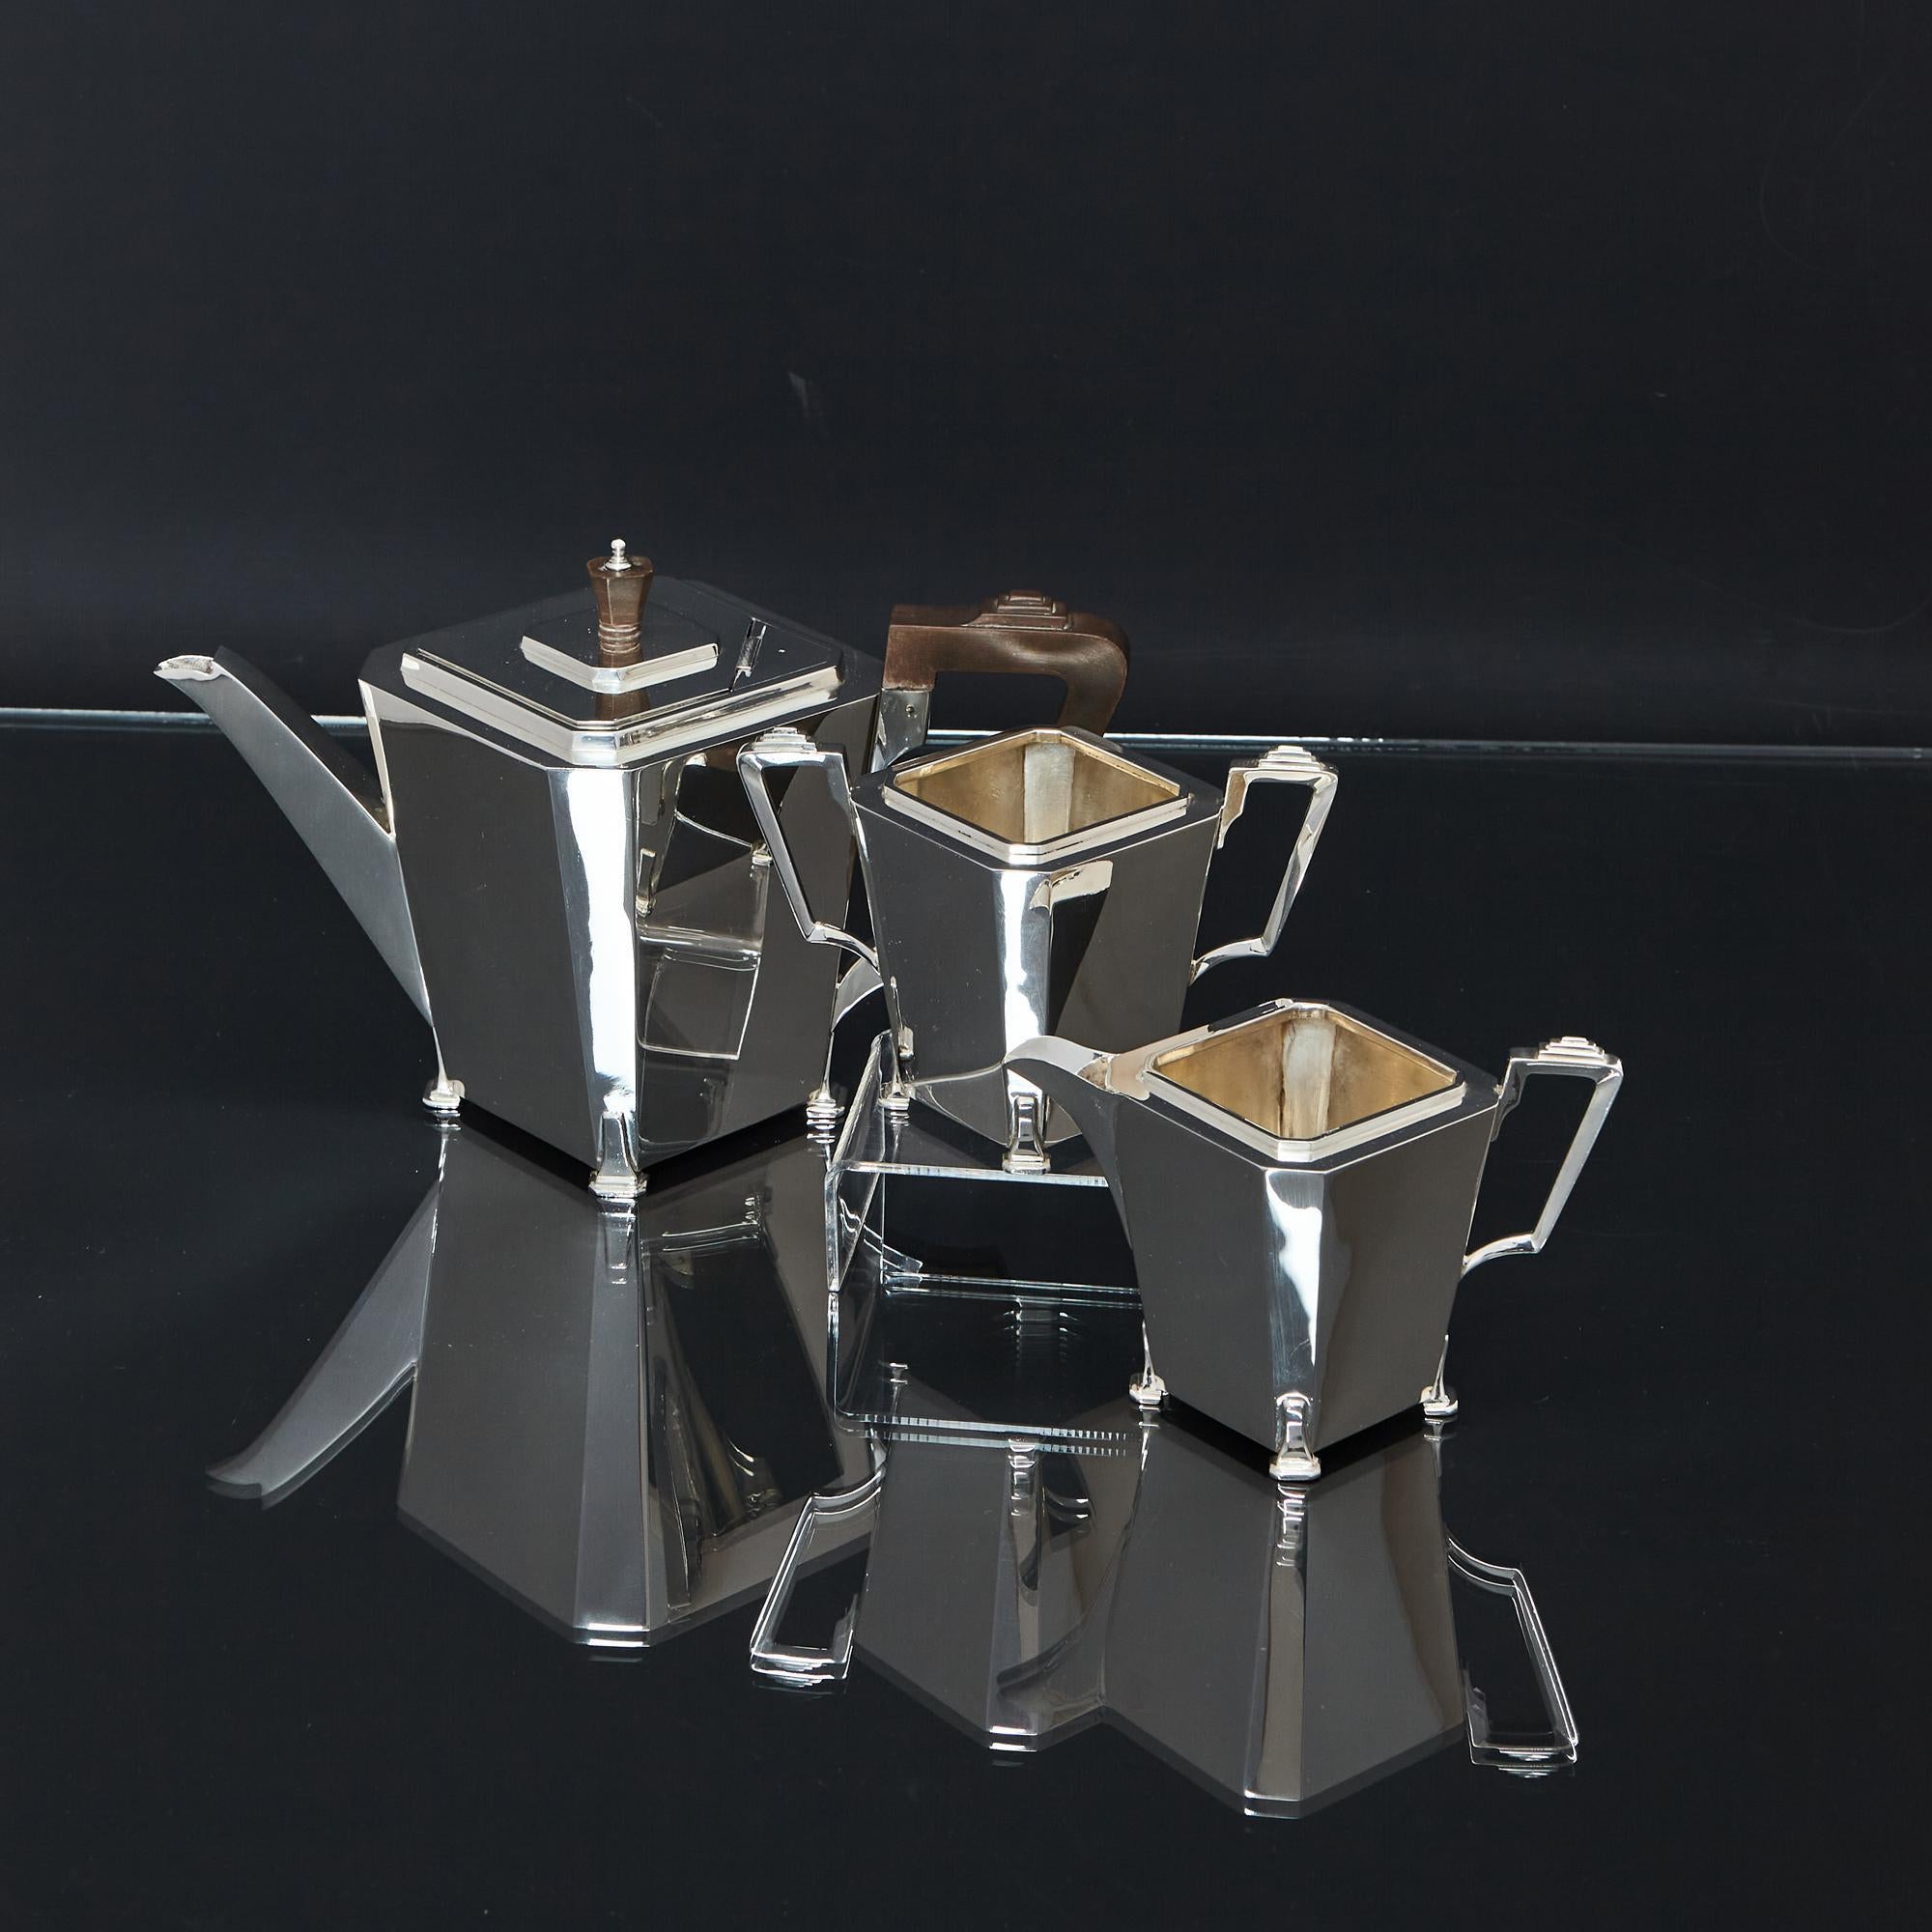 Sehr stilvolles dreiteiliges Art-Déco-Silberteeservice mit den typischen eleganten Linien der Epoche. Alle Teile dieses handgefertigten silbernen Teeservices haben einen geometrischen, quadratischen Korpus mit abgeschnittenen Ecken und